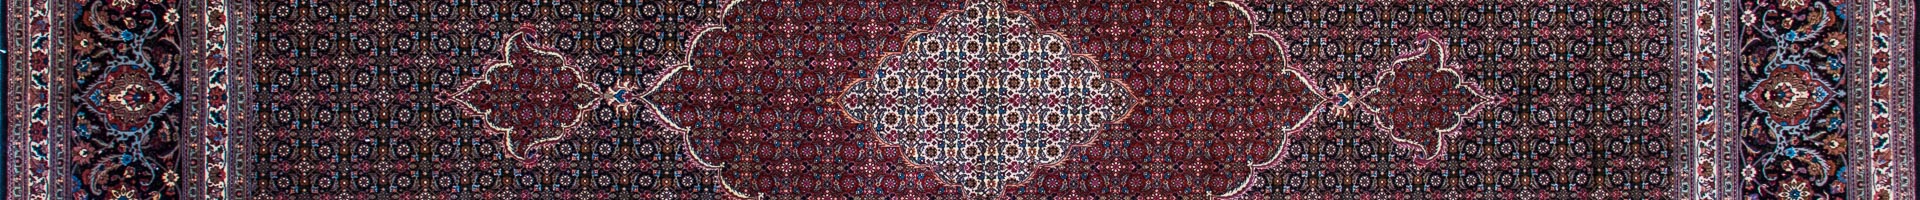 Tabriz Mahi Persian Carpet Rug N1Carpet Montreal Canada Tapis Persan